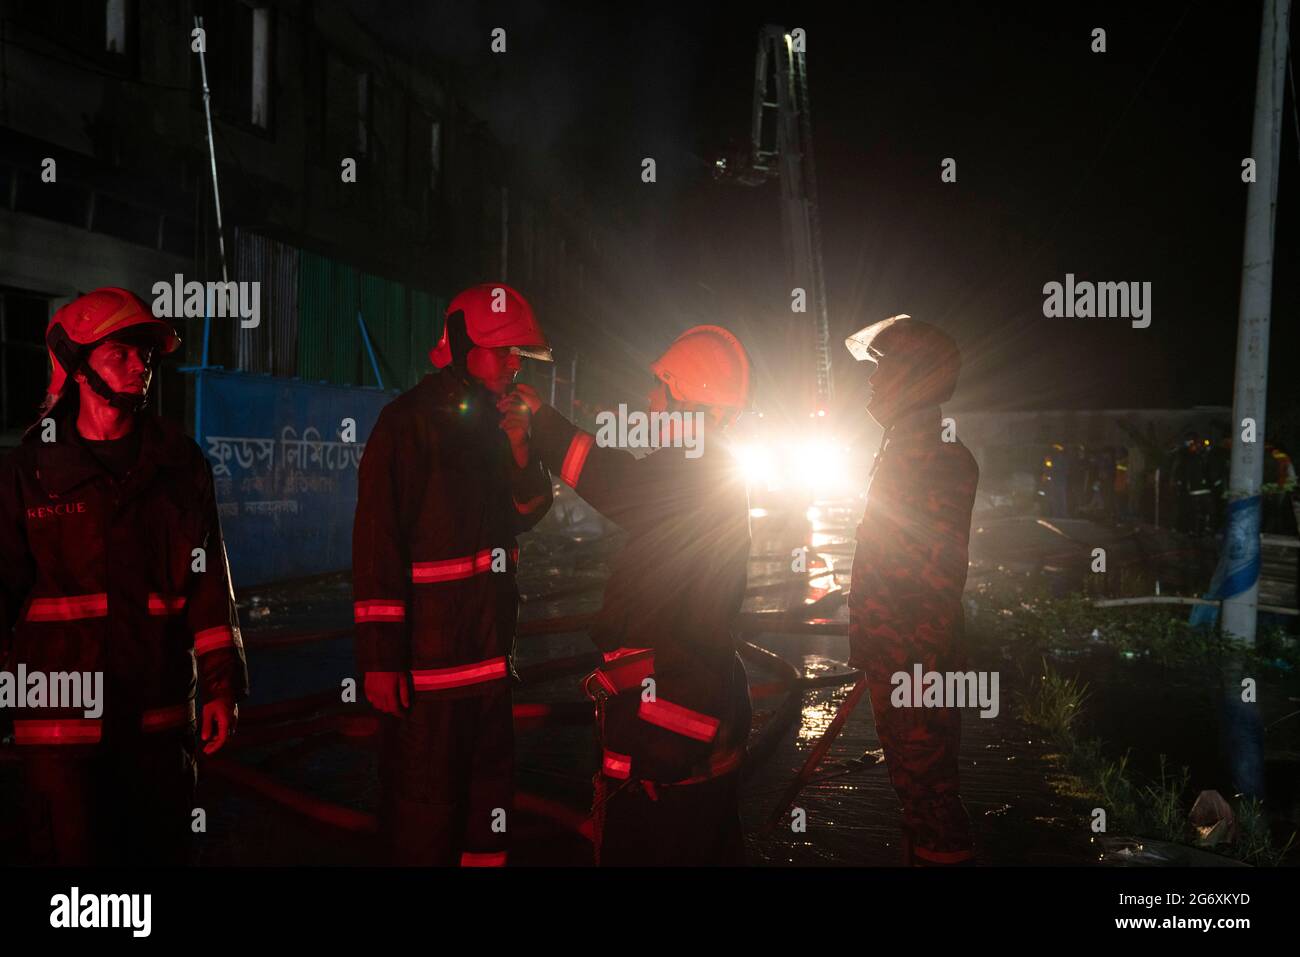 Rupganj, Bangladesh. 9 juillet 2021. Un incendie mortel a éclaté dans une usine alimentaire de Rupganj, à Narayanganj. Plus de 50 personnes sont mortes à cause du feu qui a forcé de nombreux travailleurs à sauter pour leur vie depuis les étages supérieurs. Banque D'Images